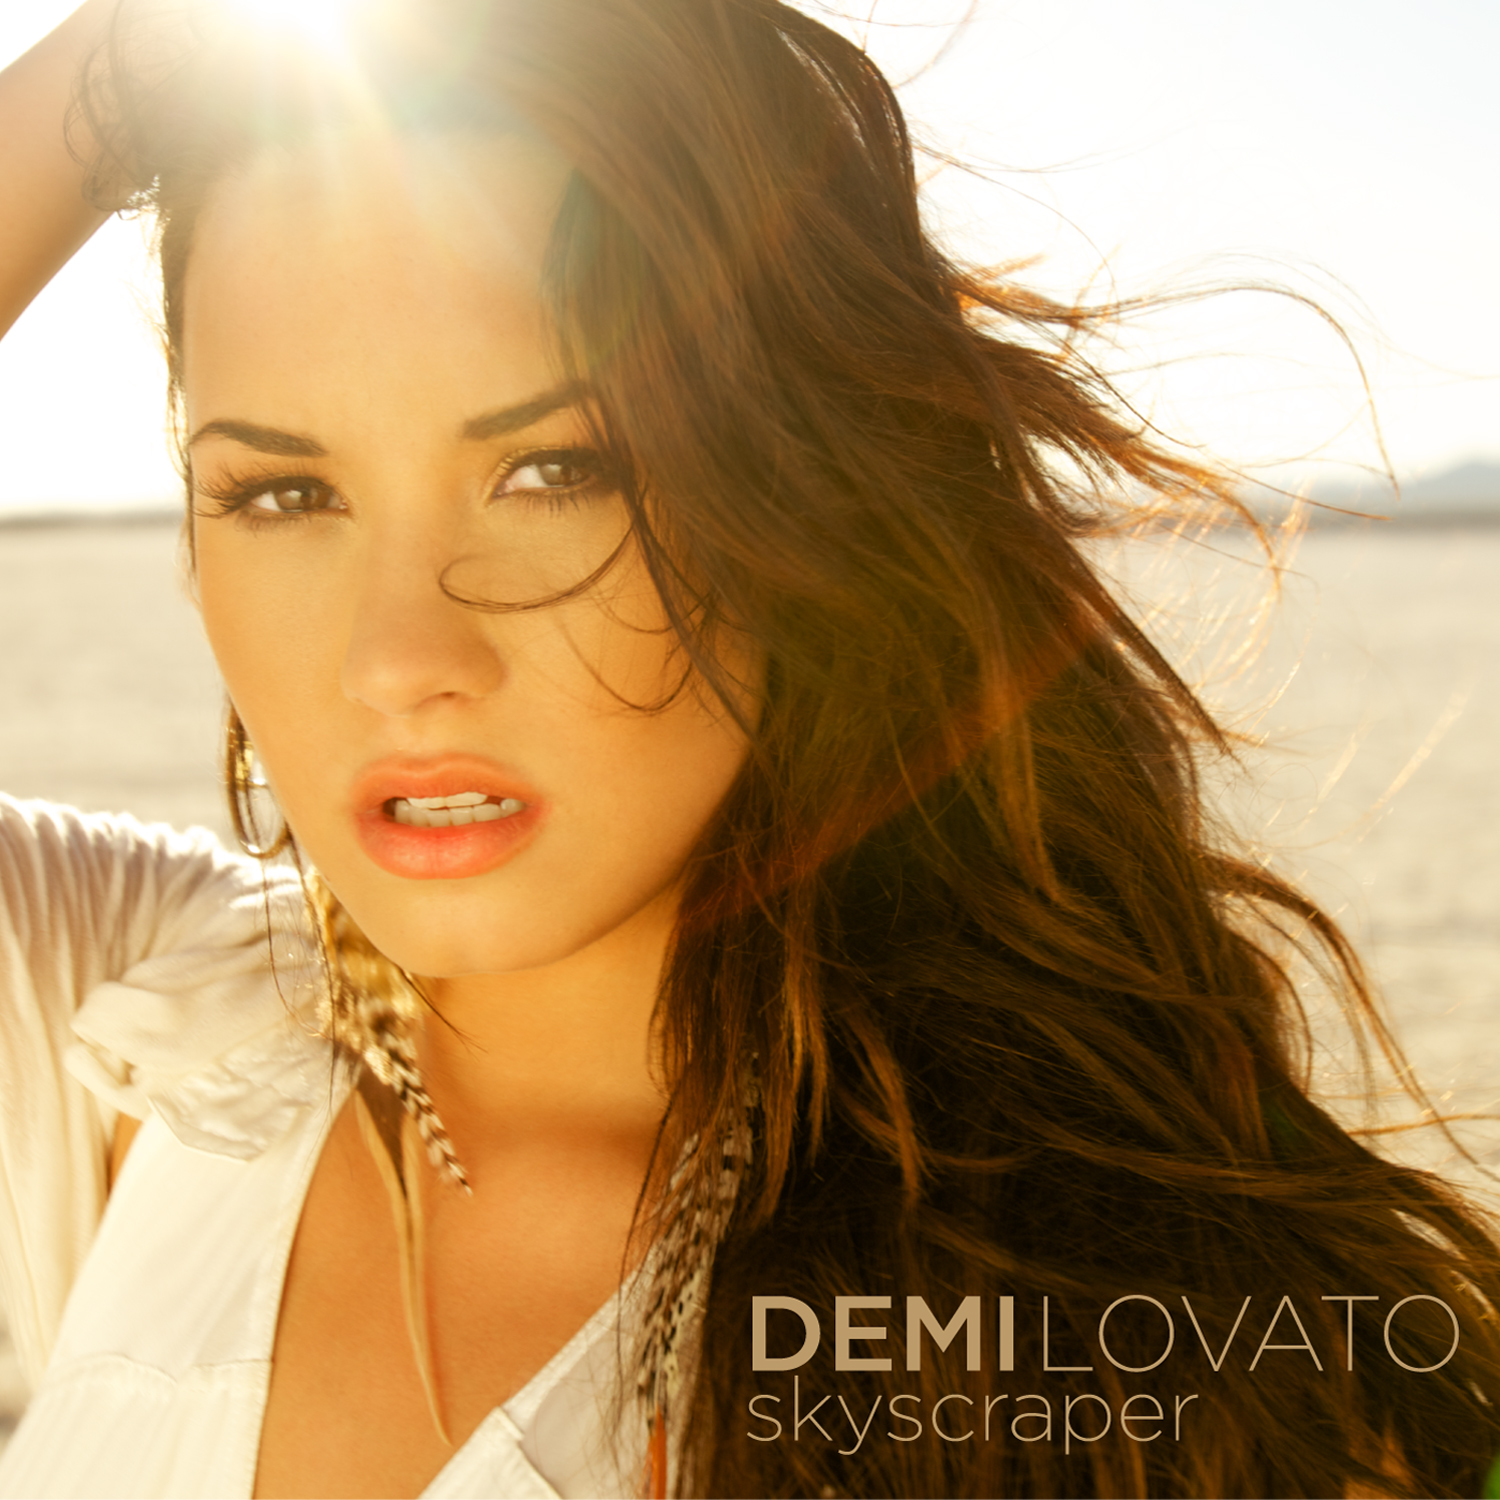 Demi Lovato Brasil on X: Confira a tradução completa de Promise